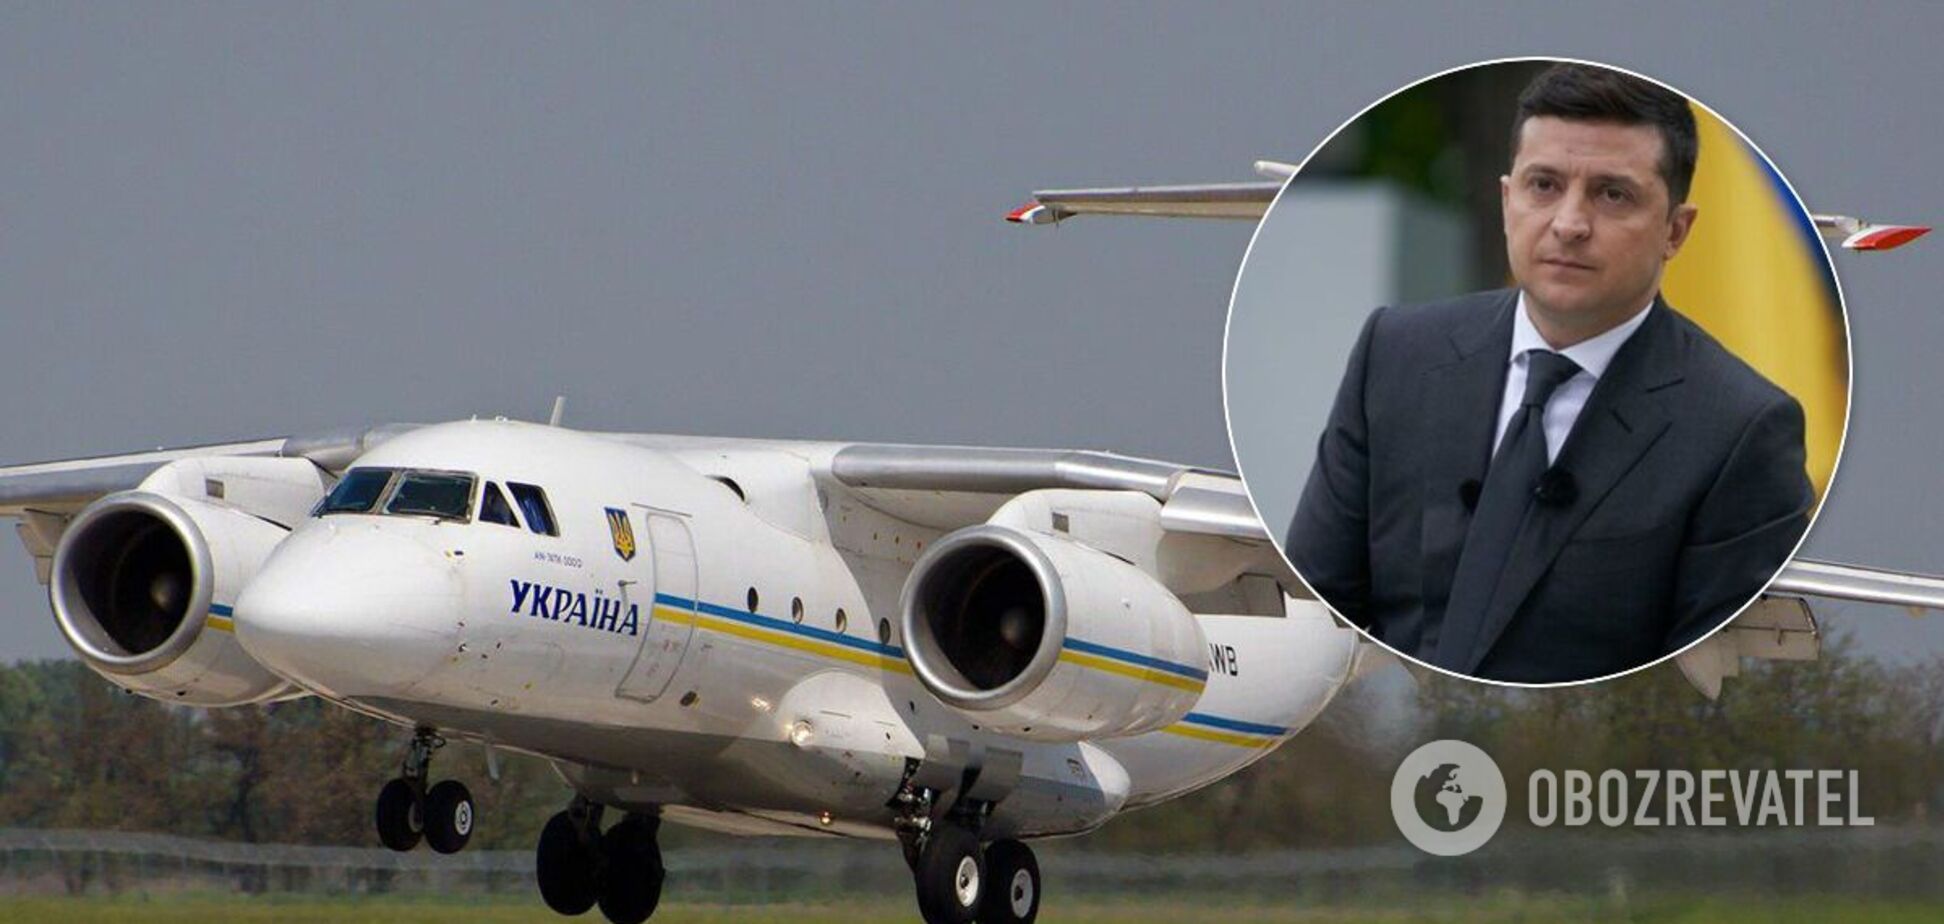 Стало відомо, скільки українці заплатили за авіаперельоти Зеленського